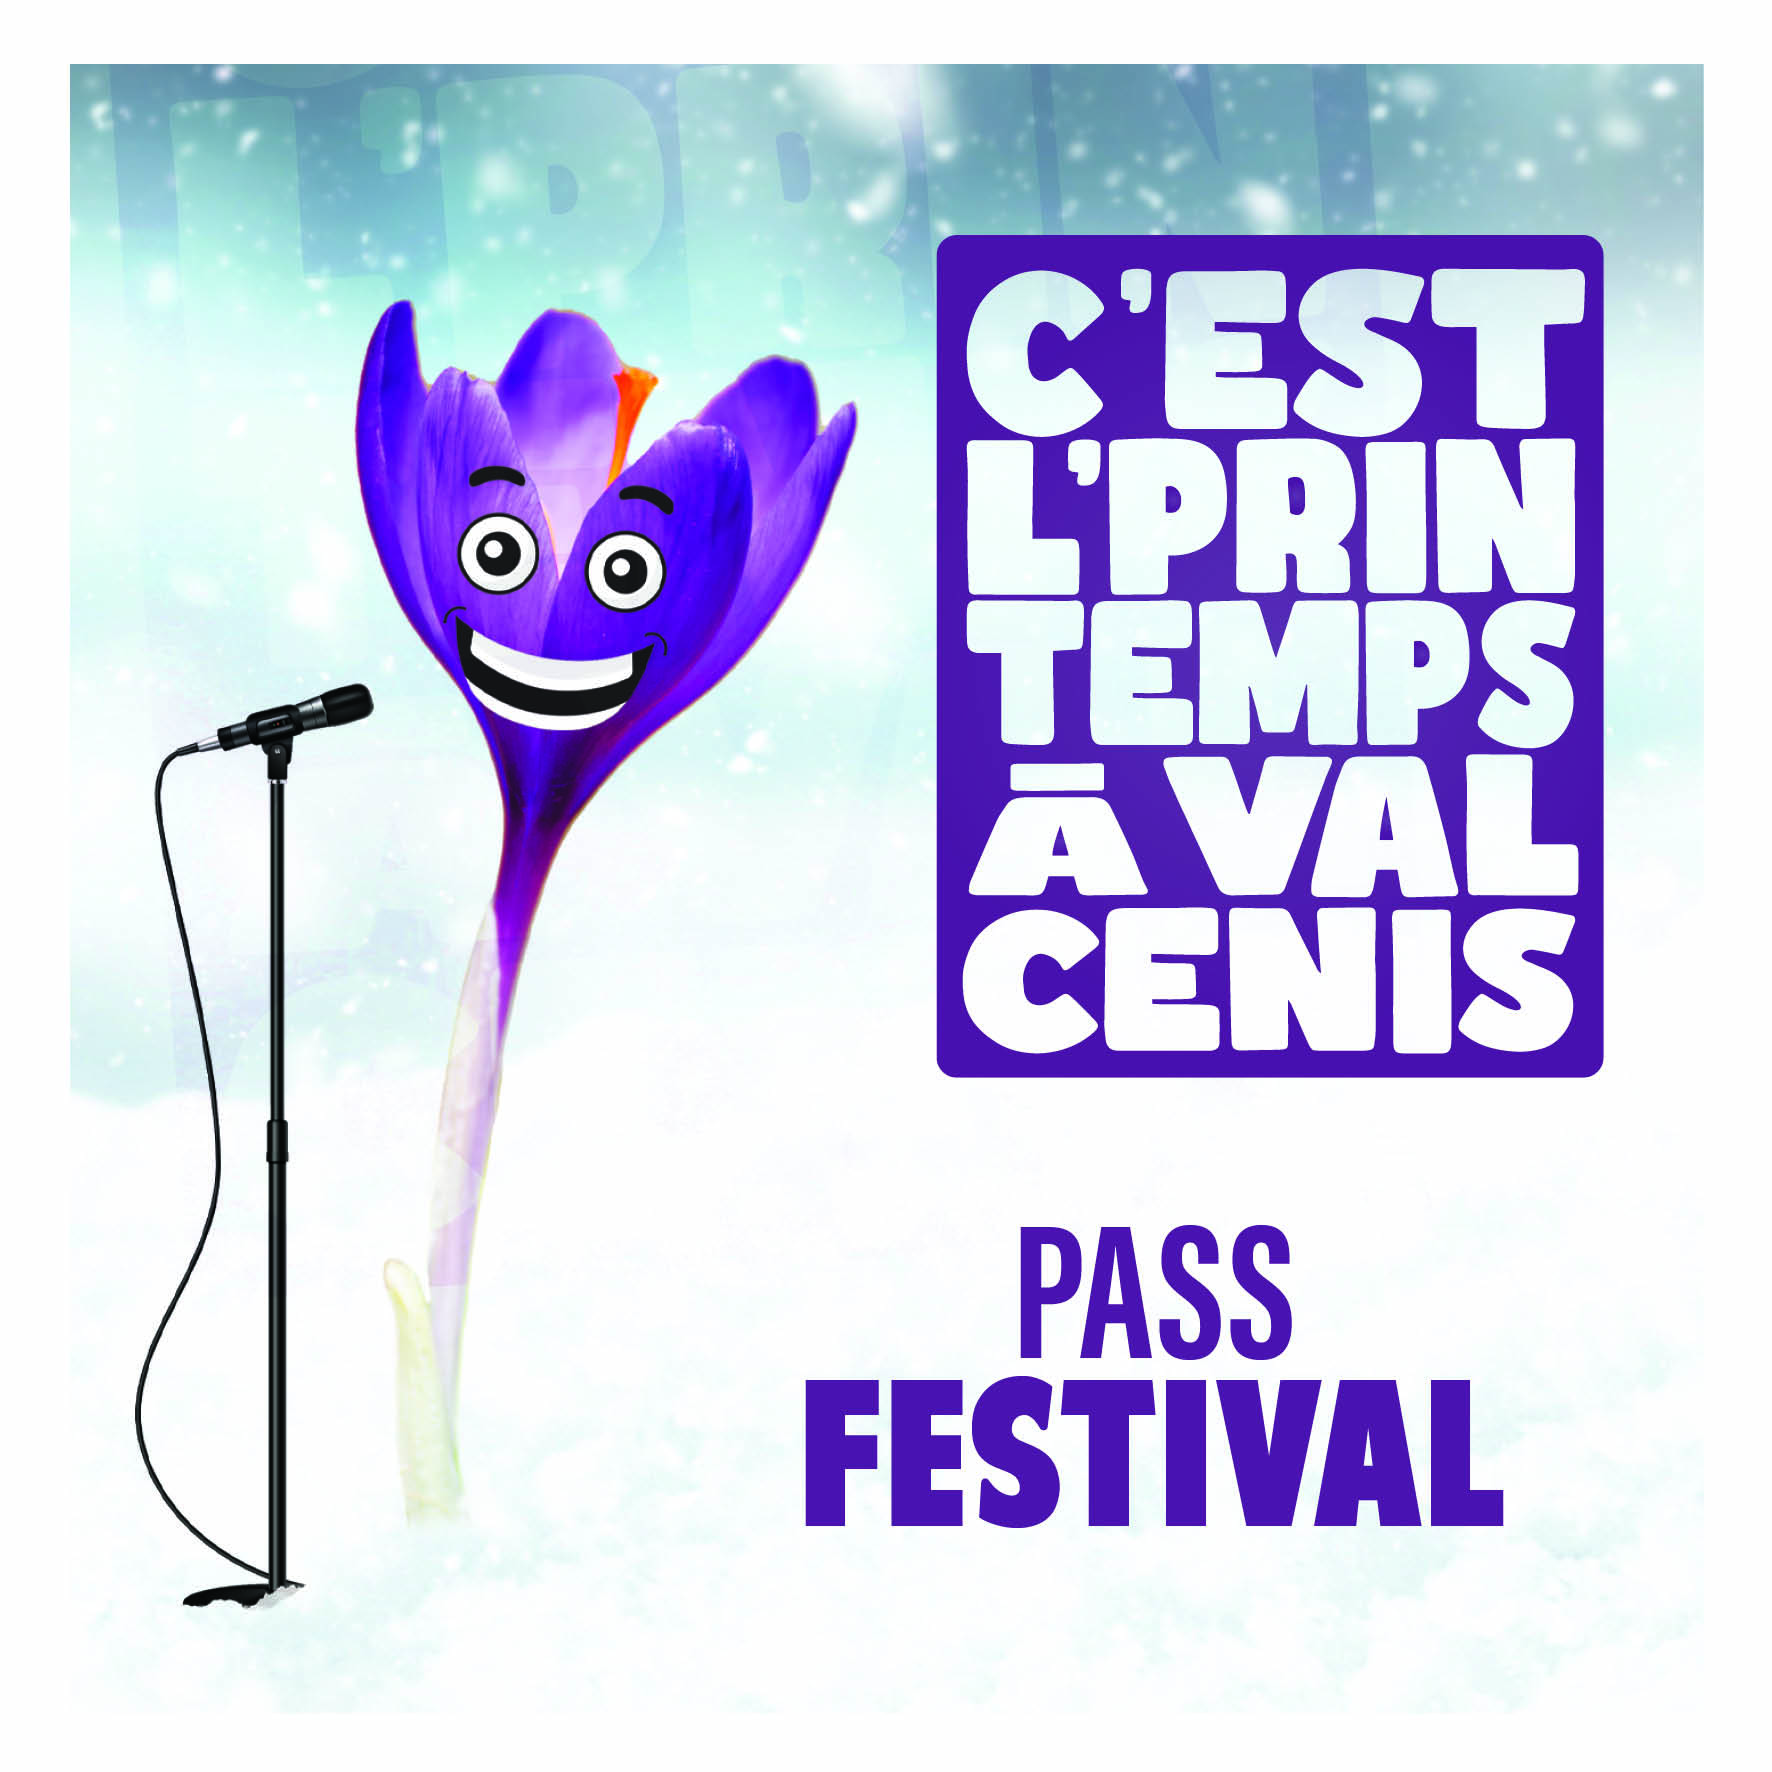 Pass Festival - C'est l'printemps de Val Cenis Val-Cenis